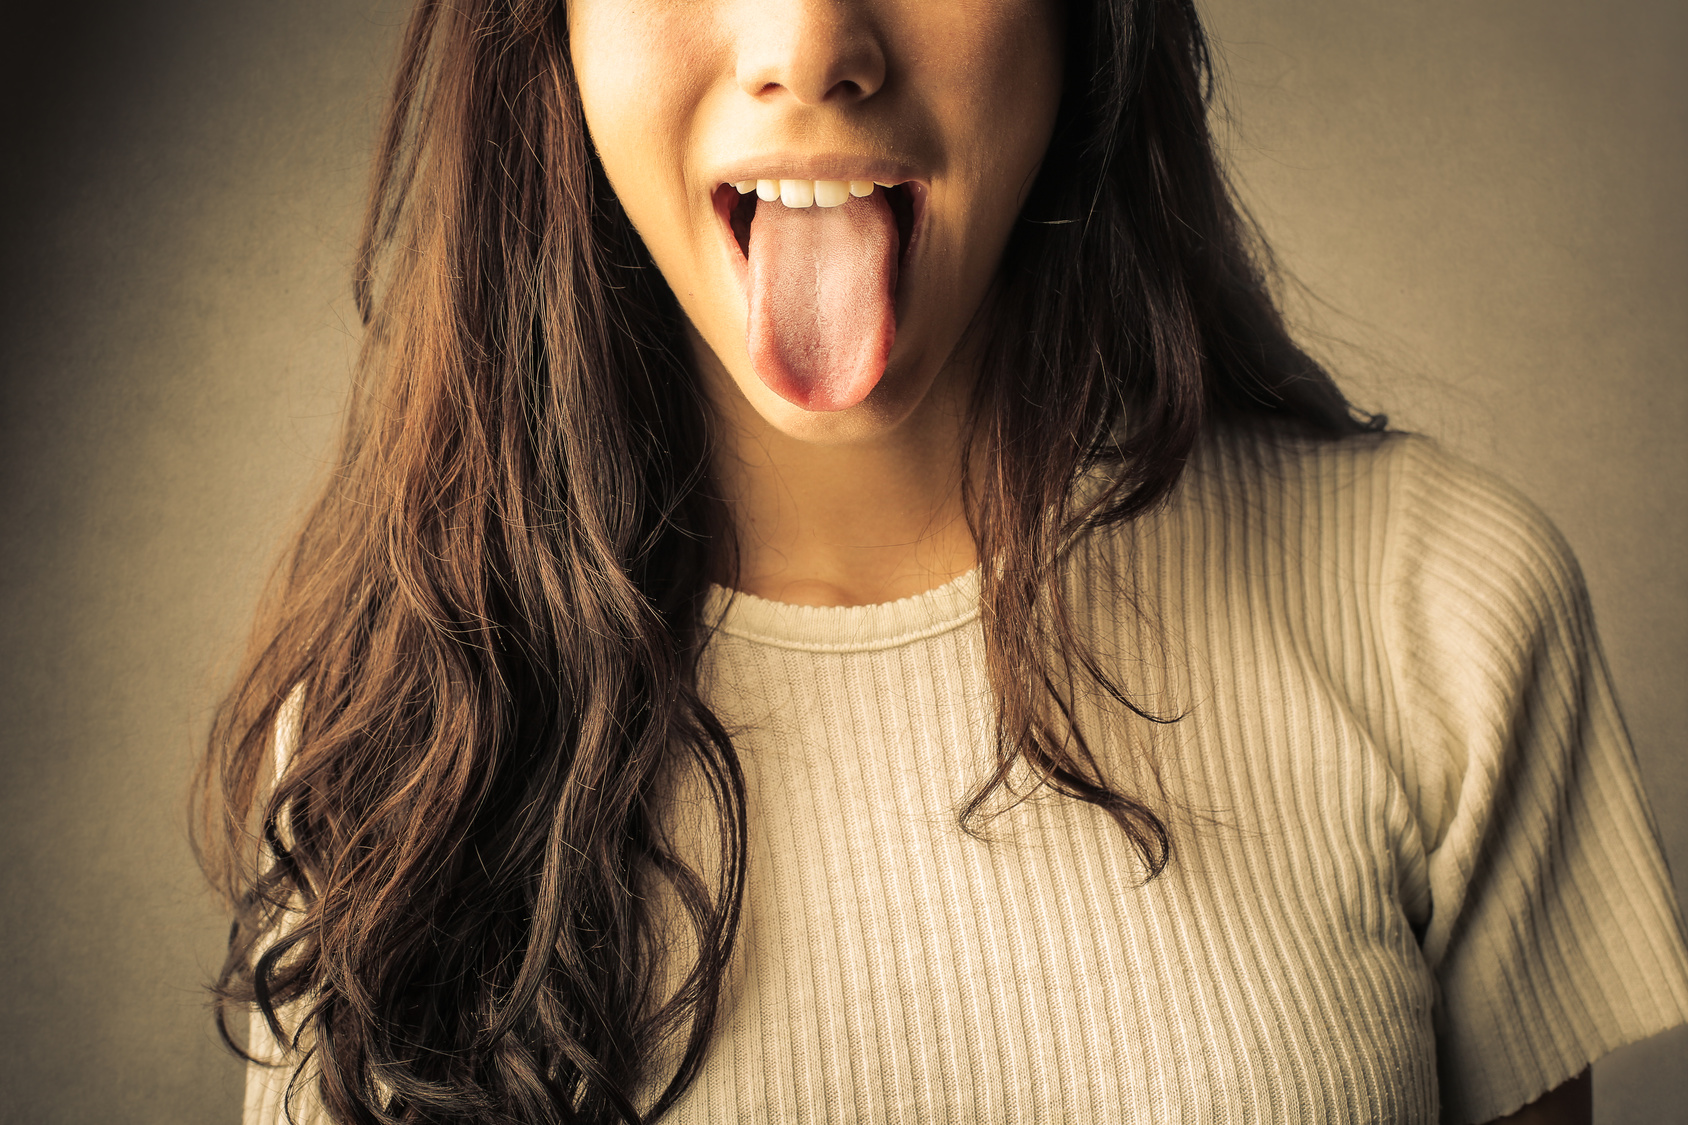 Фото рта с языком без лица девушки